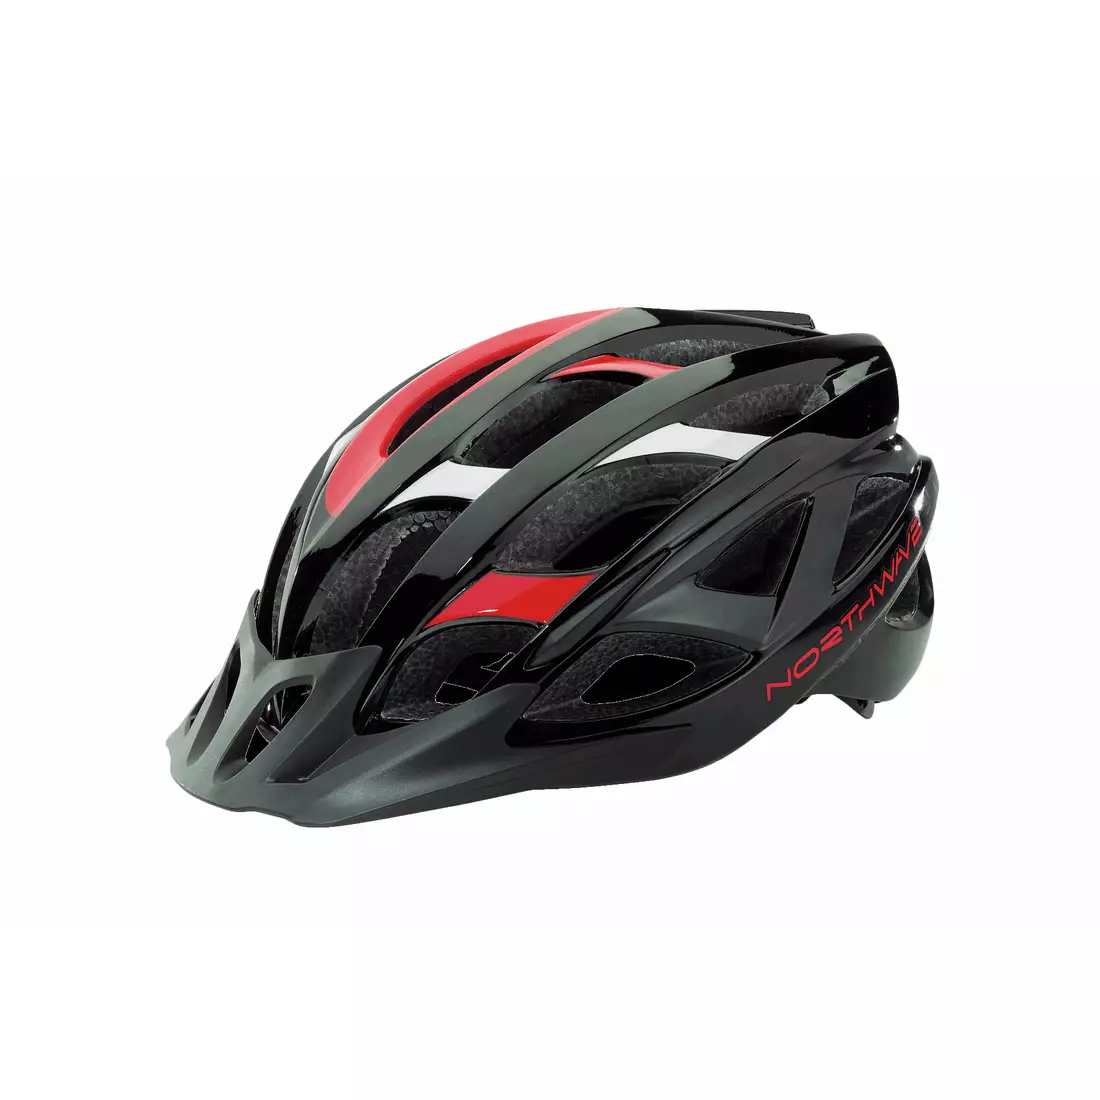 NORTHWAVE RANGER bicycle helmet, black-red